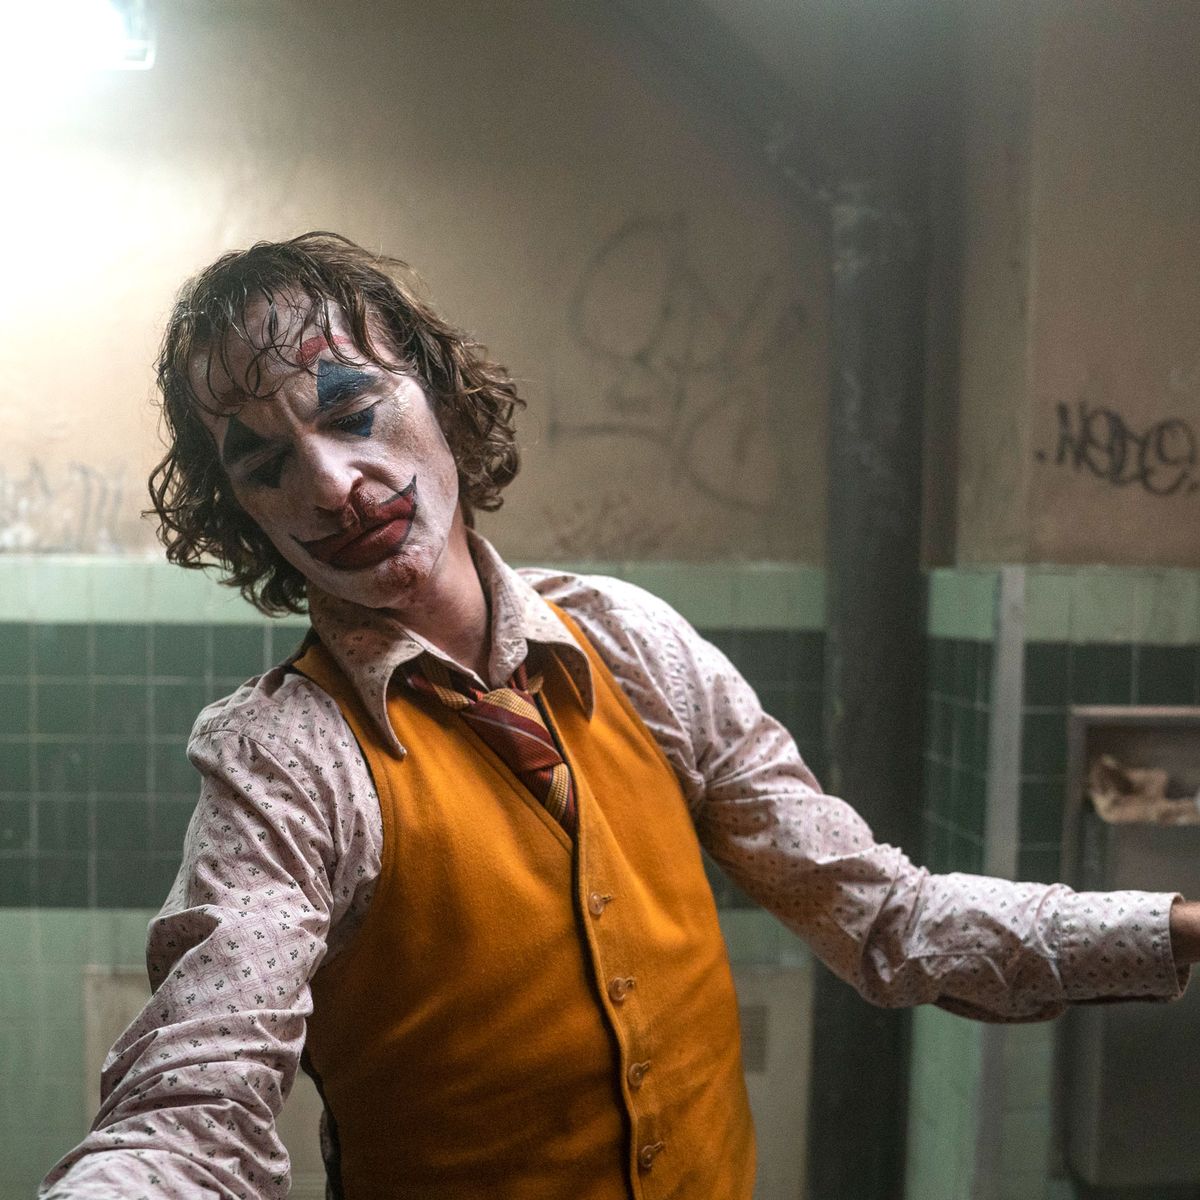 GSC - Hahahahahahahahahahahahaha! Joaquin Phoenix is the Best Actor!  #JokerMovie #Oscars